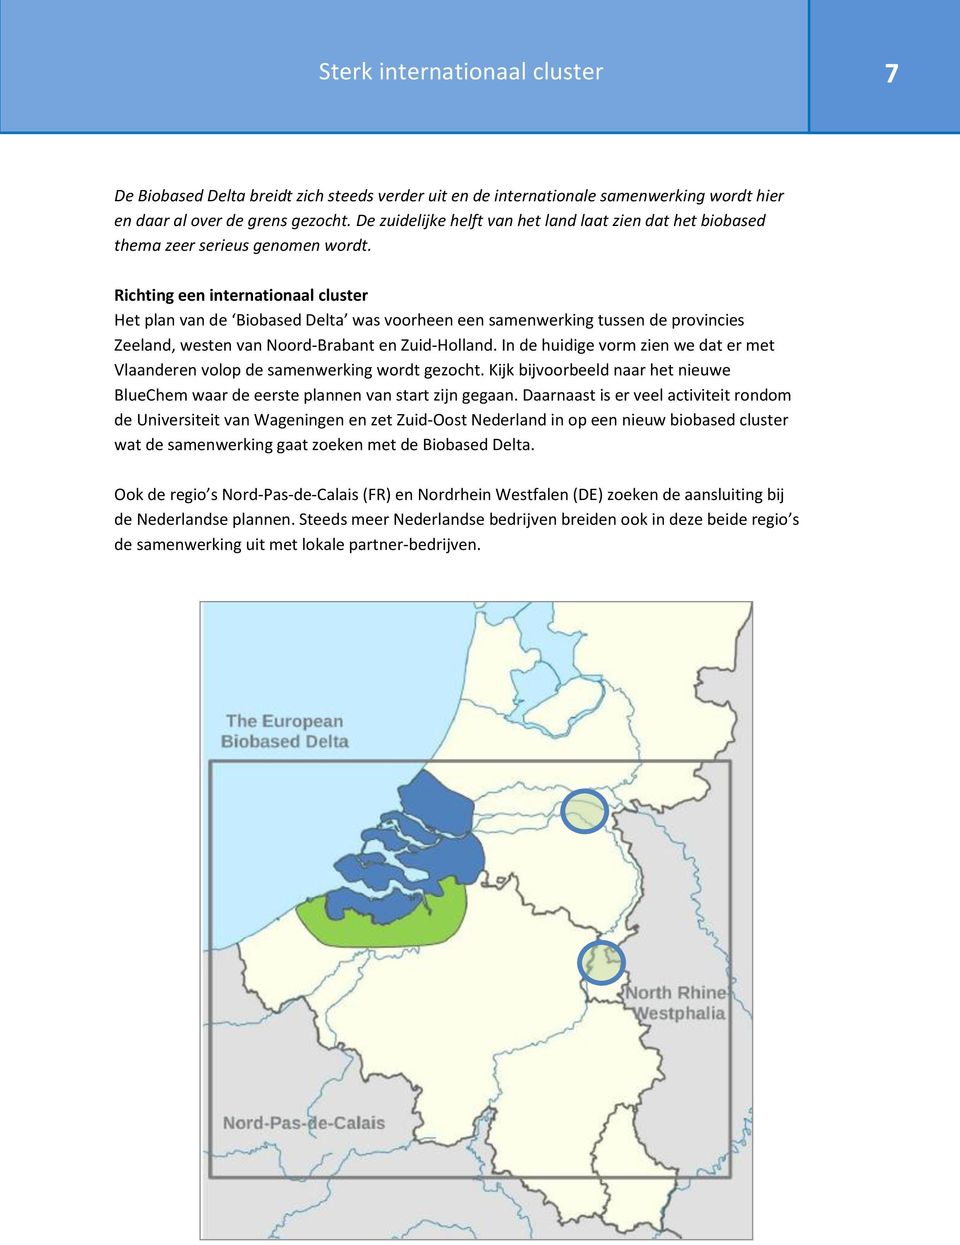 Richting een internationaal cluster Het plan van de Biobased Delta was voorheen een samenwerking tussen de provincies Zeeland, westen van Noord-Brabant en Zuid-Holland.